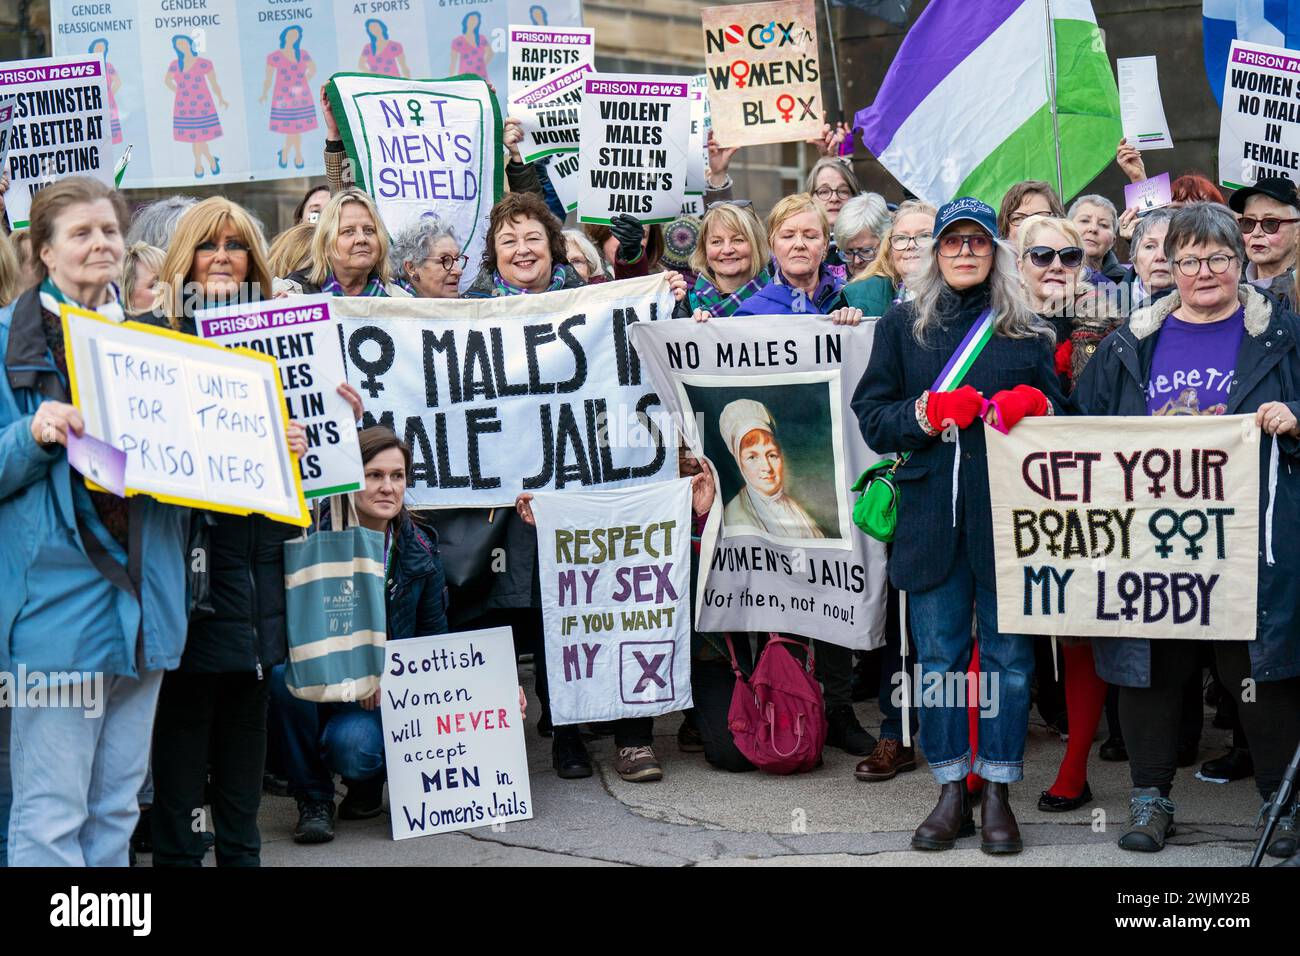 Mitglieder der Wahlkampfgruppe Women Won't Wheesht protestieren vor dem schottischen Regierungsgebäude St. Andrews House in Edinburgh, um zu fordern, dass keine Männer in Frauengefängnissen in Schottland untergebracht werden. Bilddatum: Freitag, 16. Februar 2024. Stockfoto